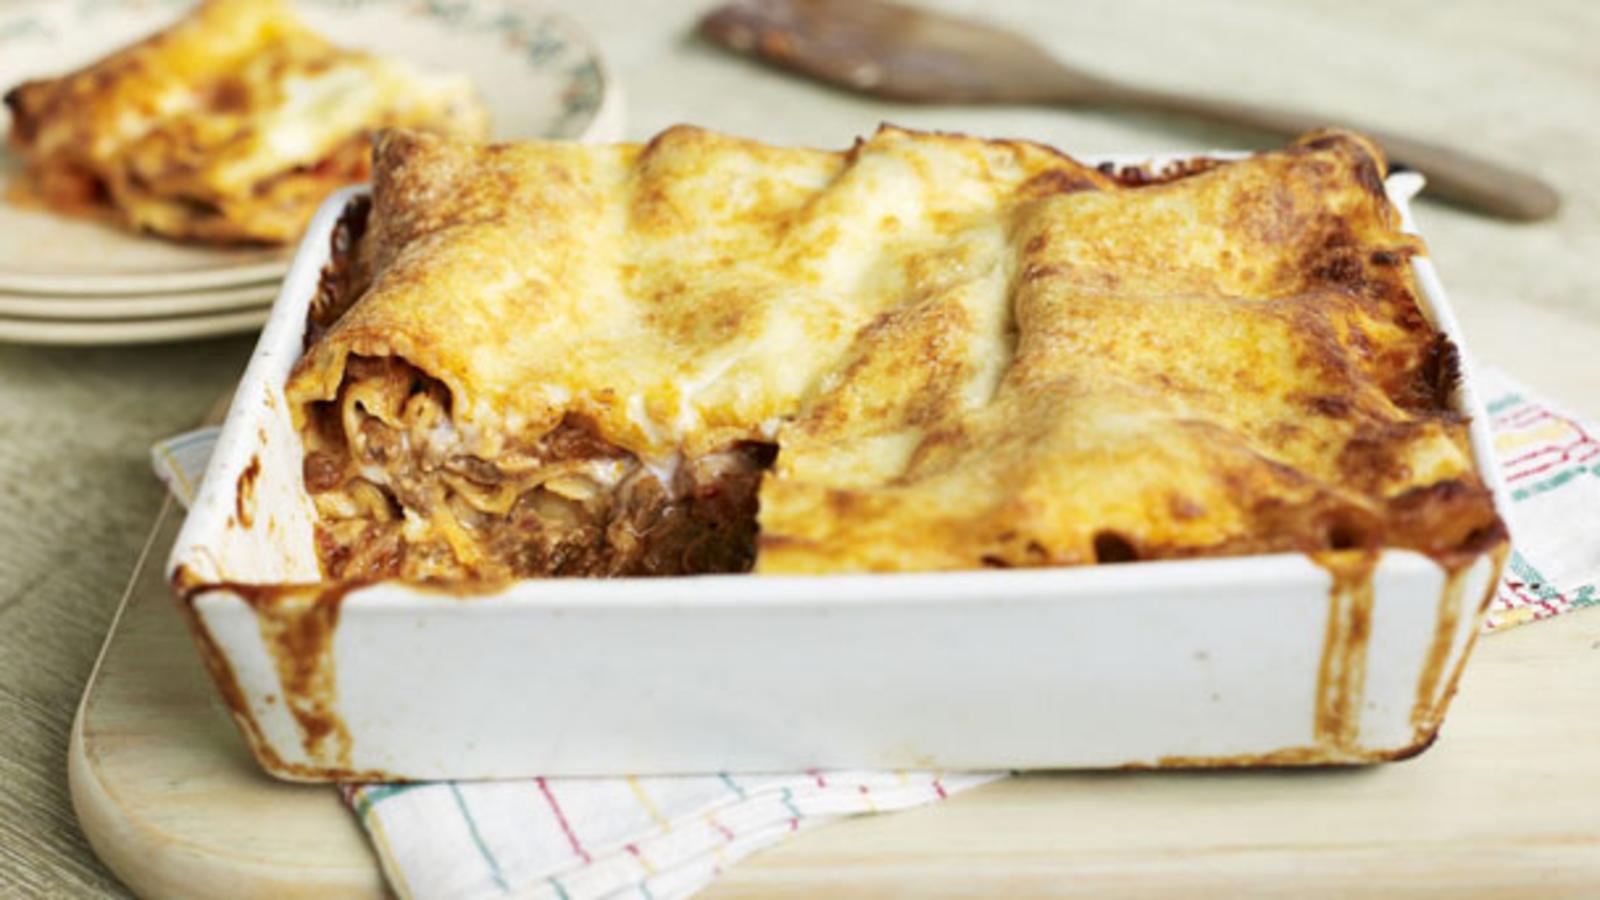 Lasagne sheets recipes - BBC Food